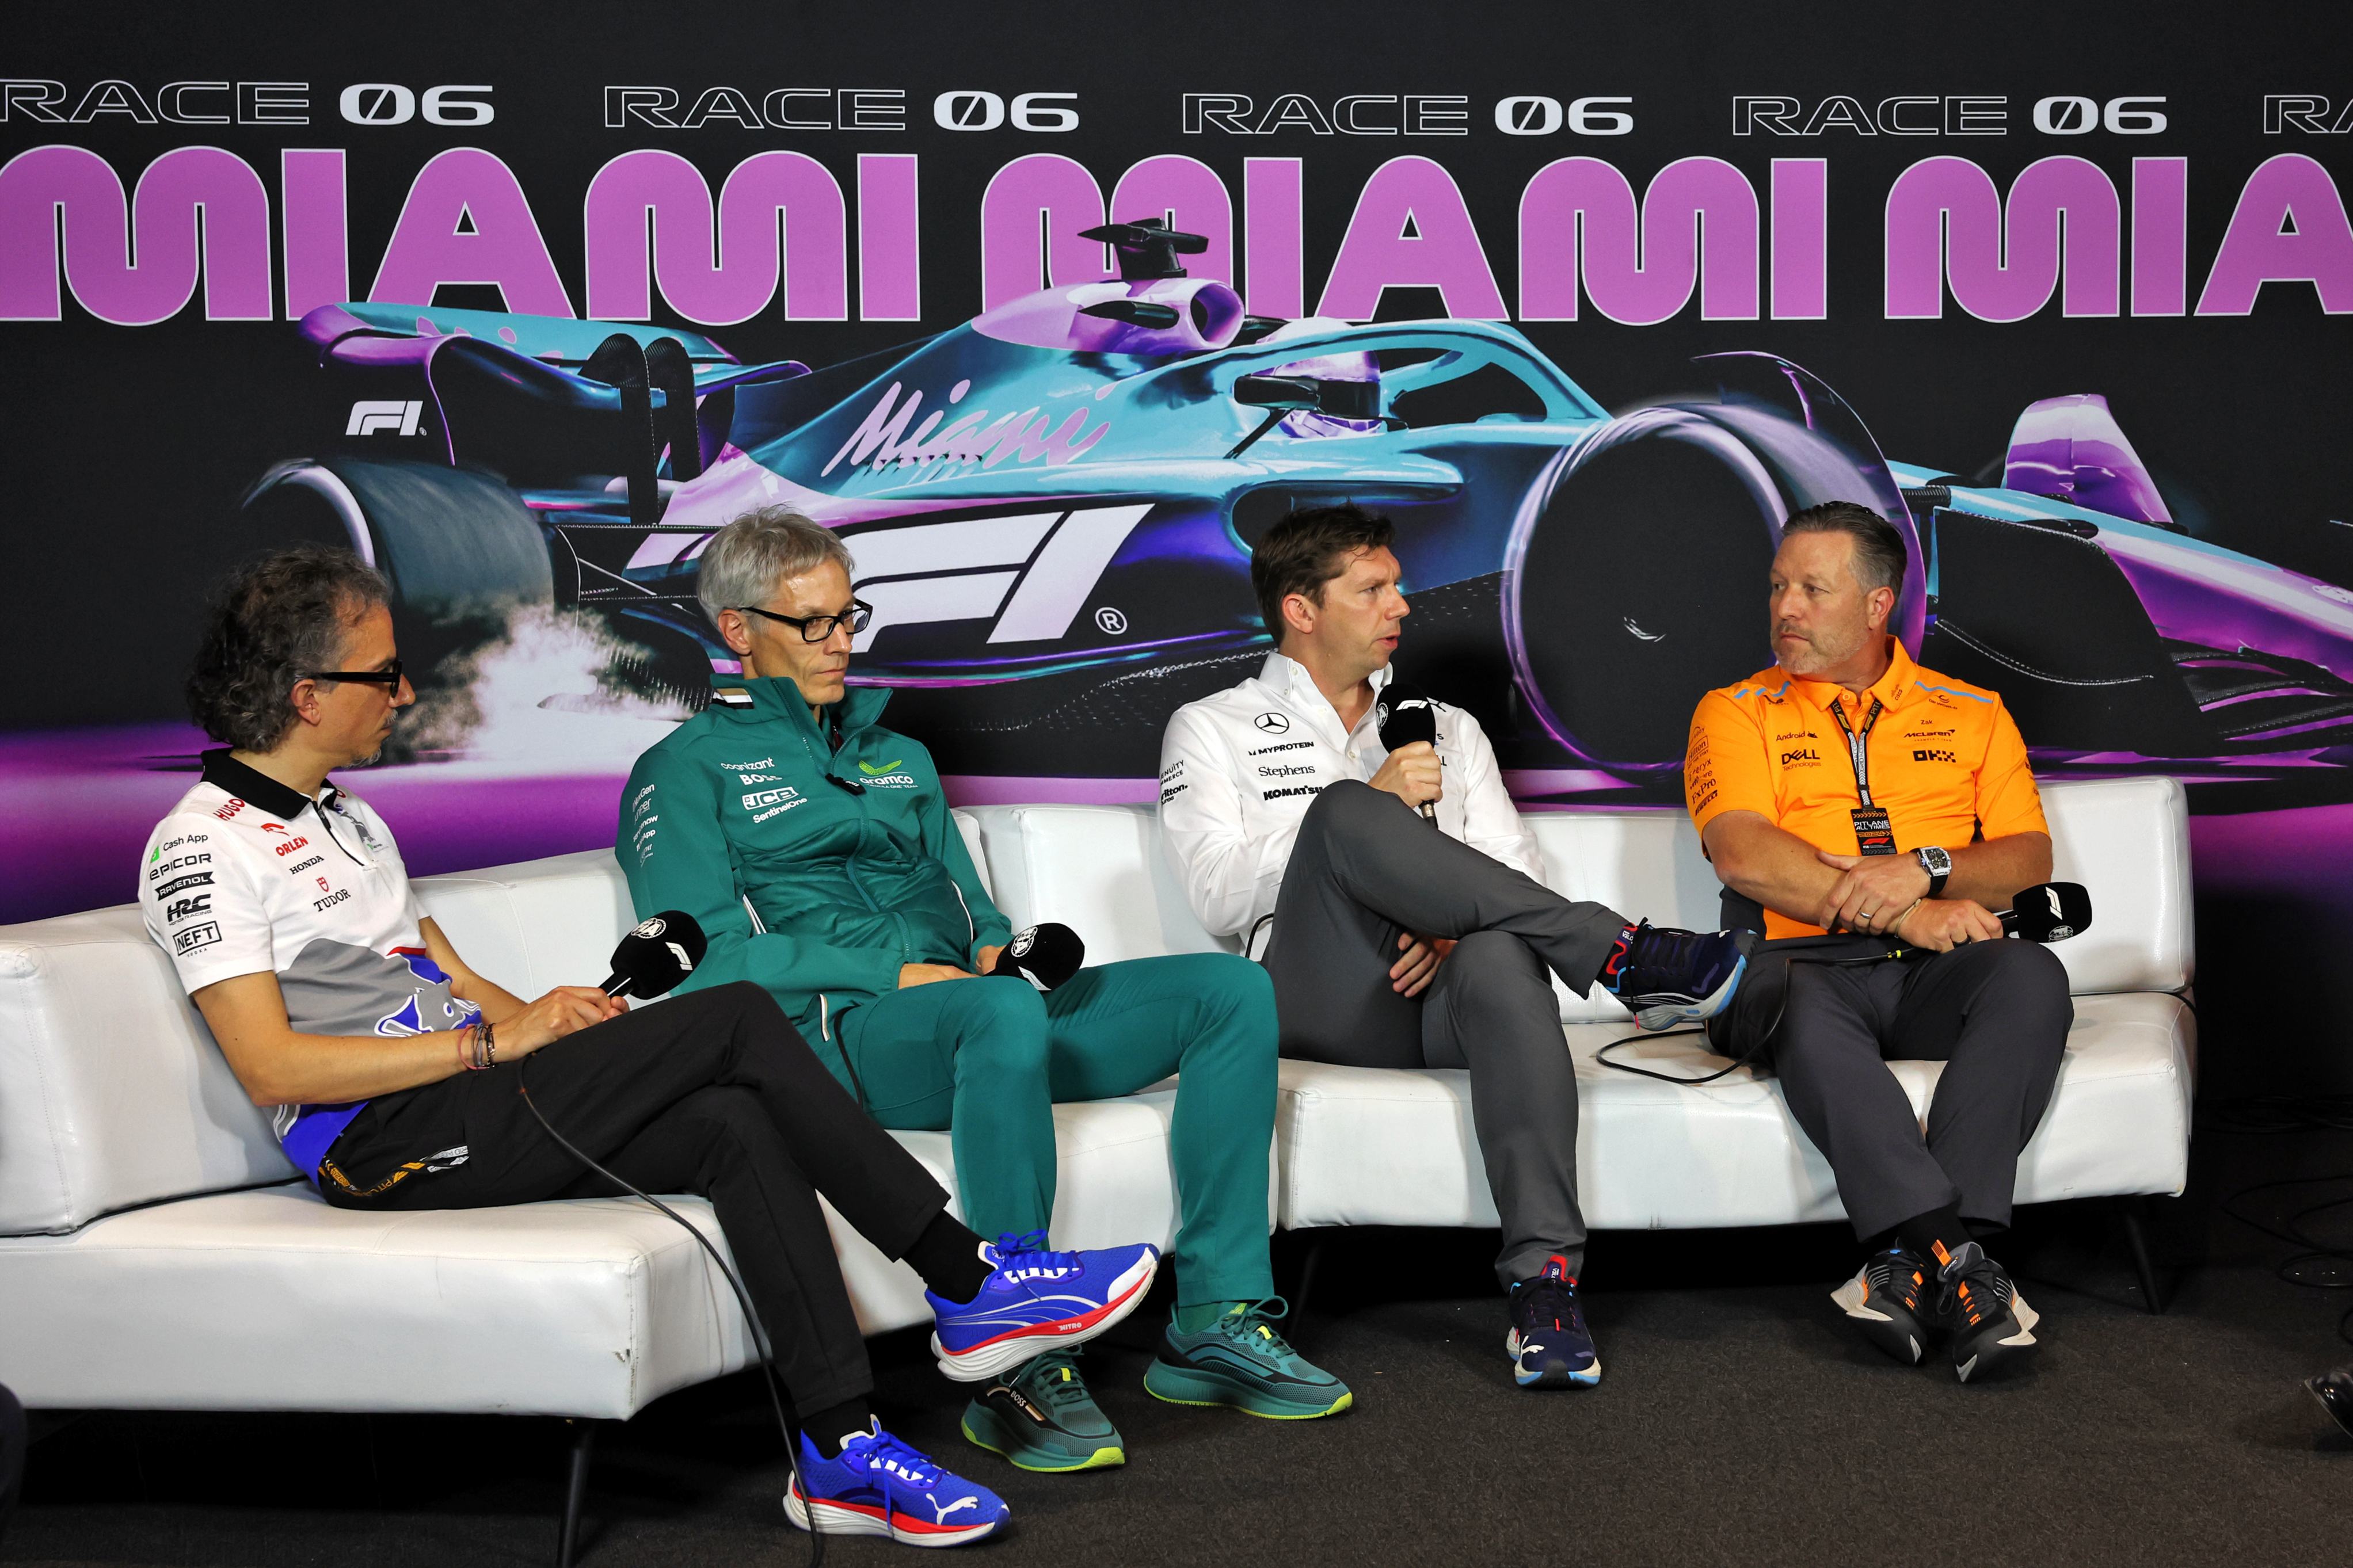 os chefes de equipe da fórmula 1 querem ver um novo formato de pontos: 'nossa pole agora é p11'